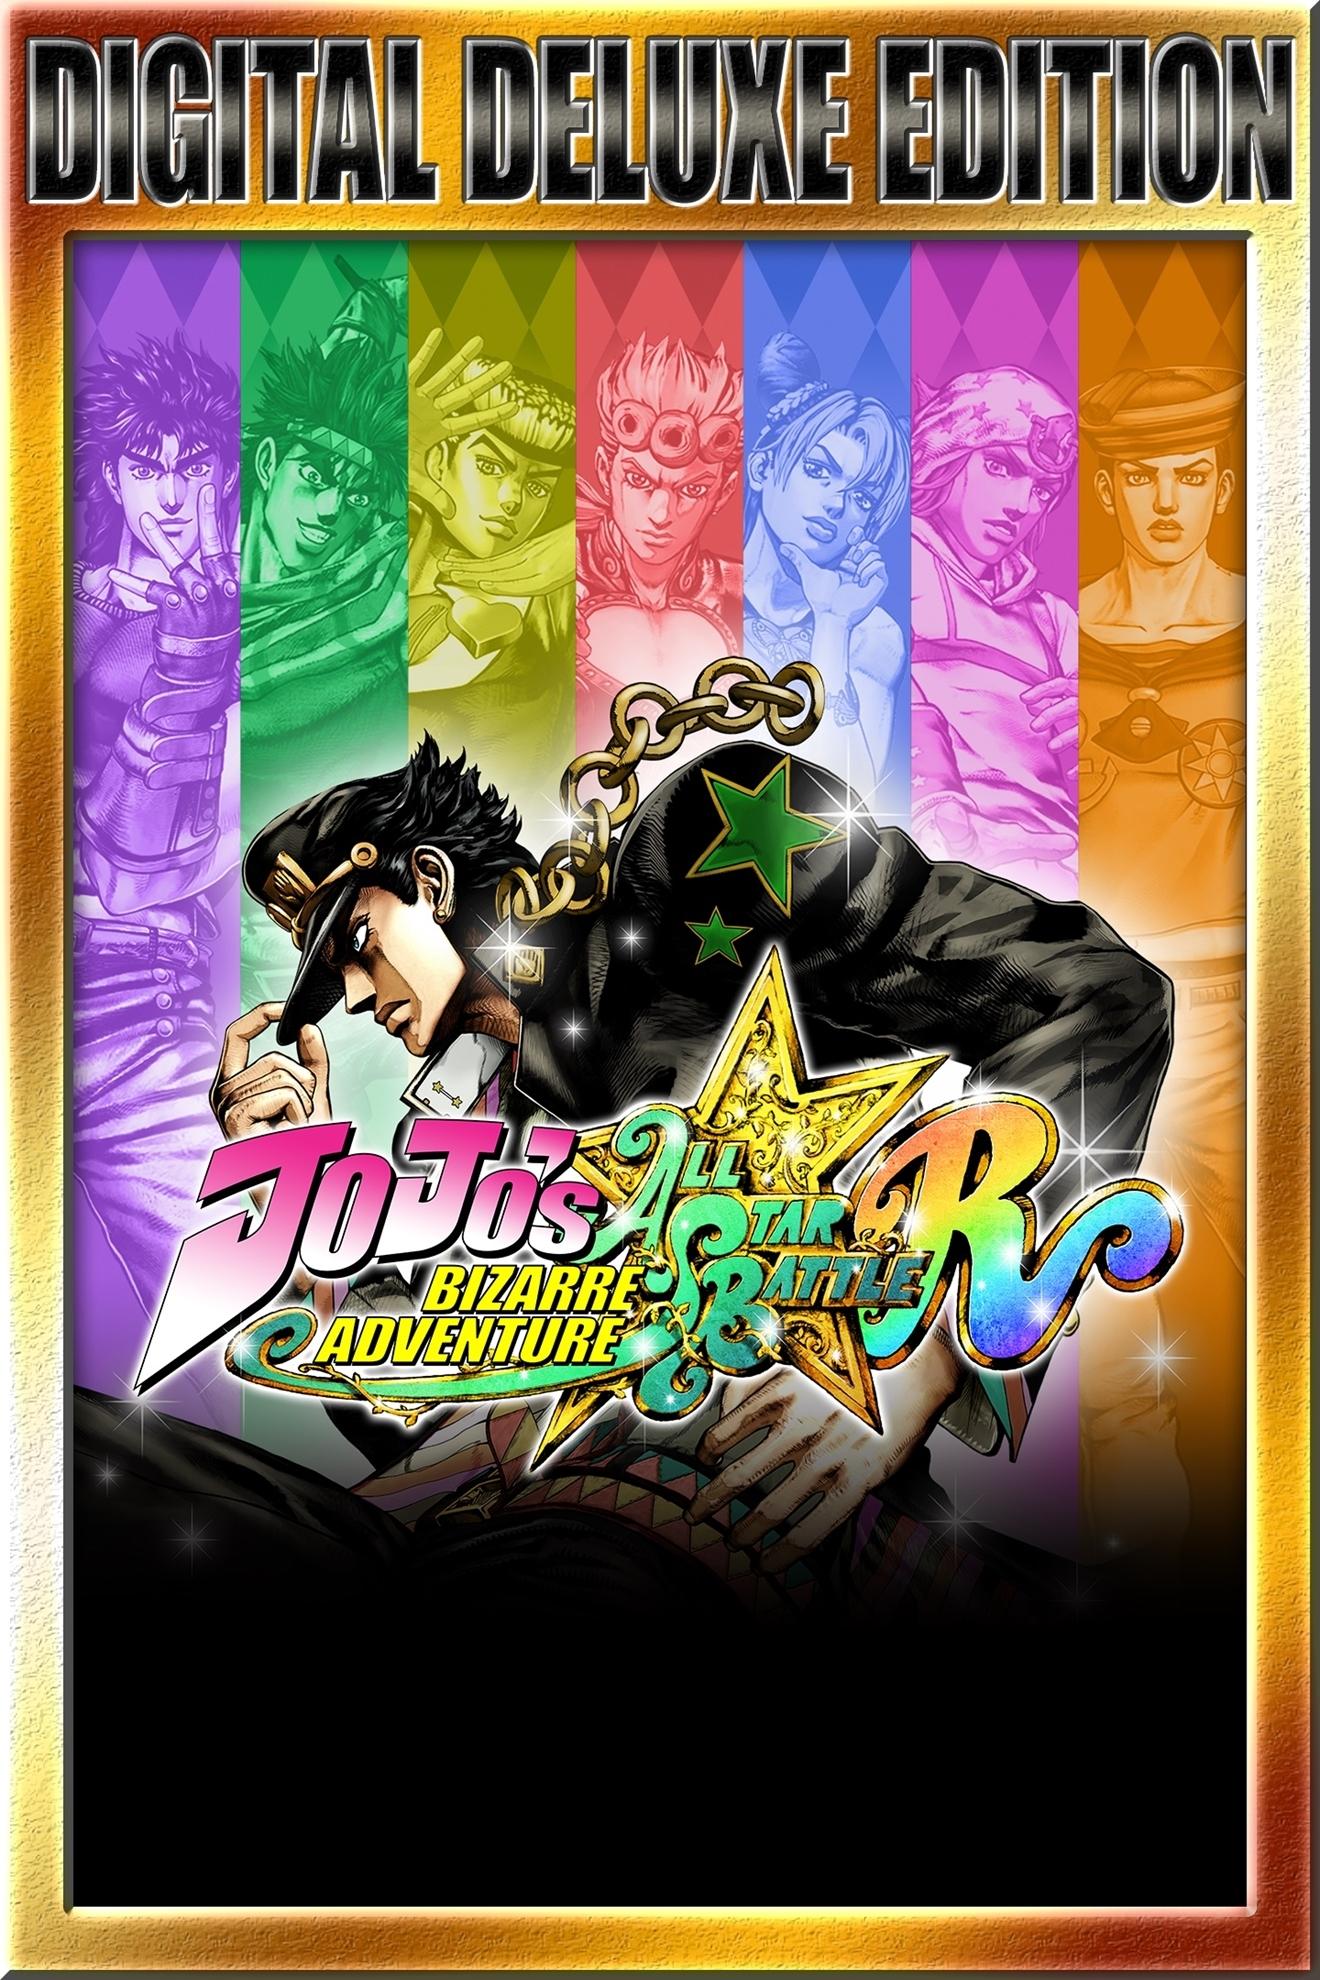 JoJo's Bizarre Adventure: All-Star Battle R Deluxe Edition